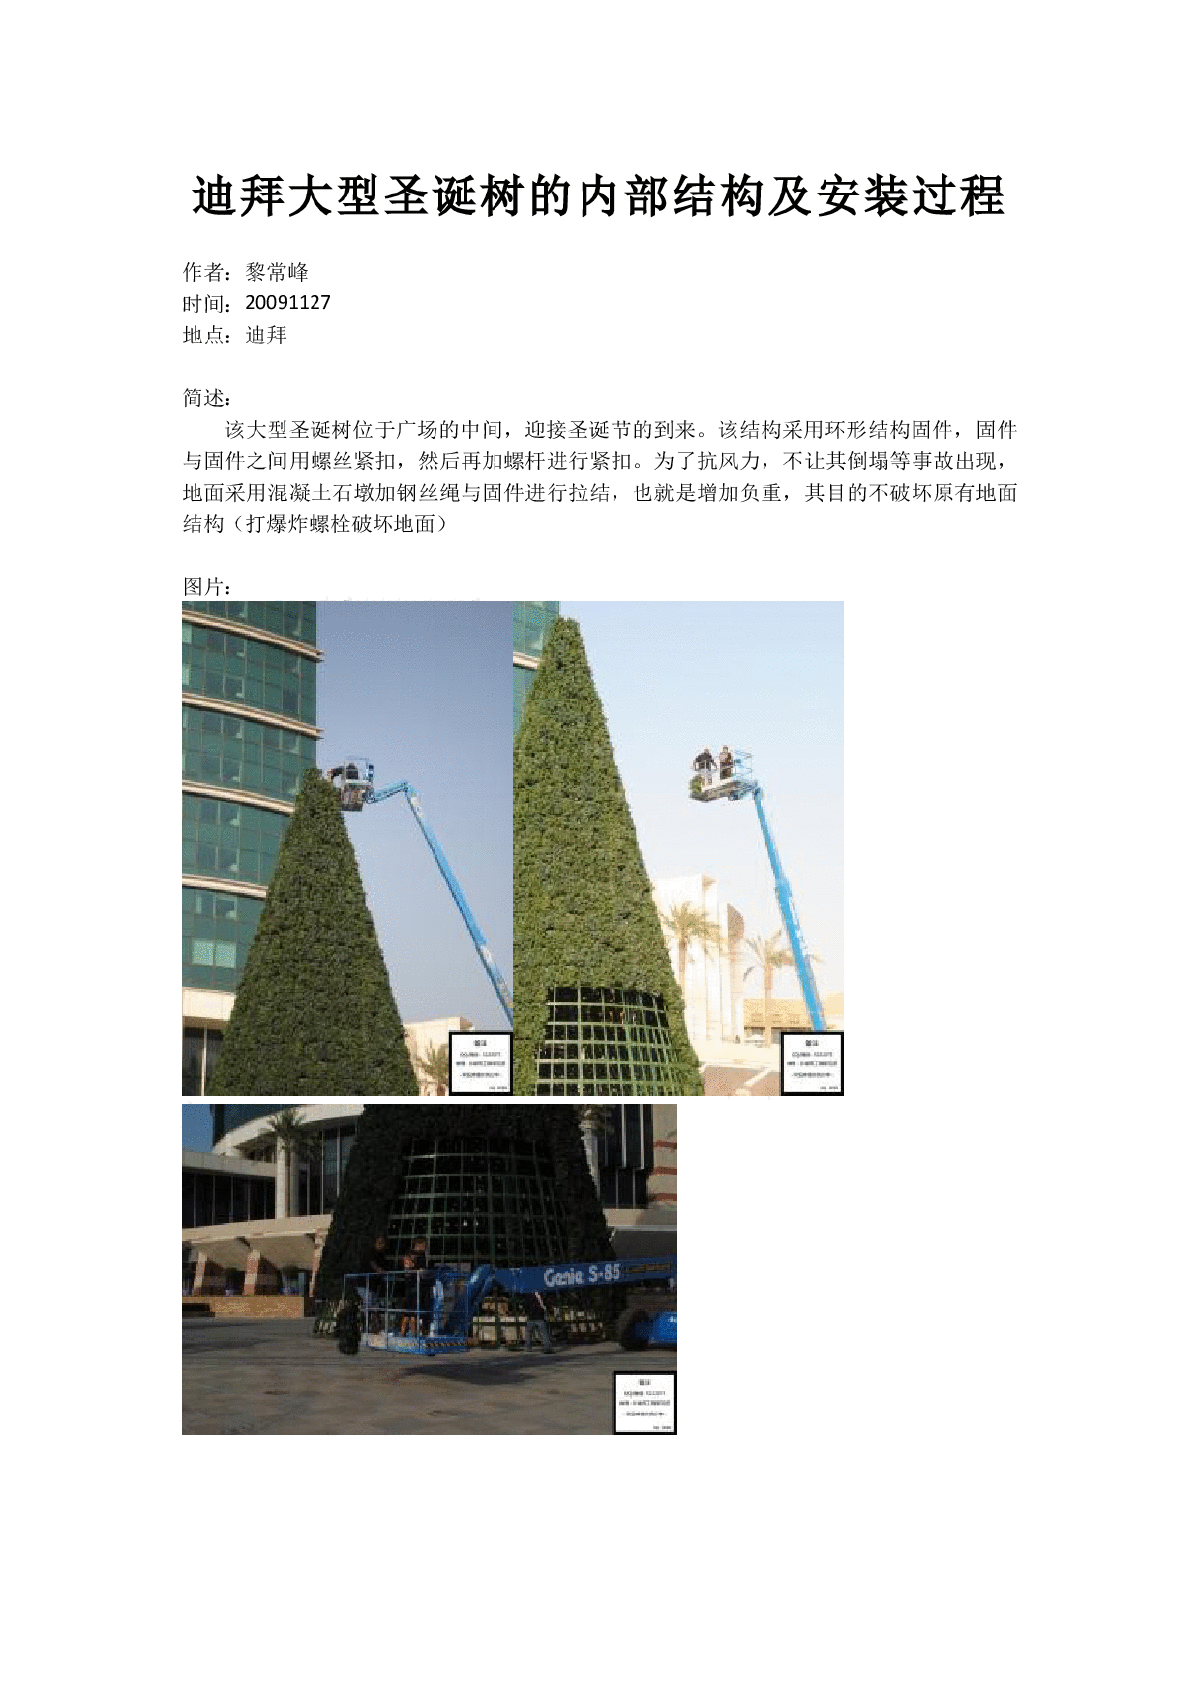 迪拜大型圣诞树的内部结构及安装过程作者黎常峰